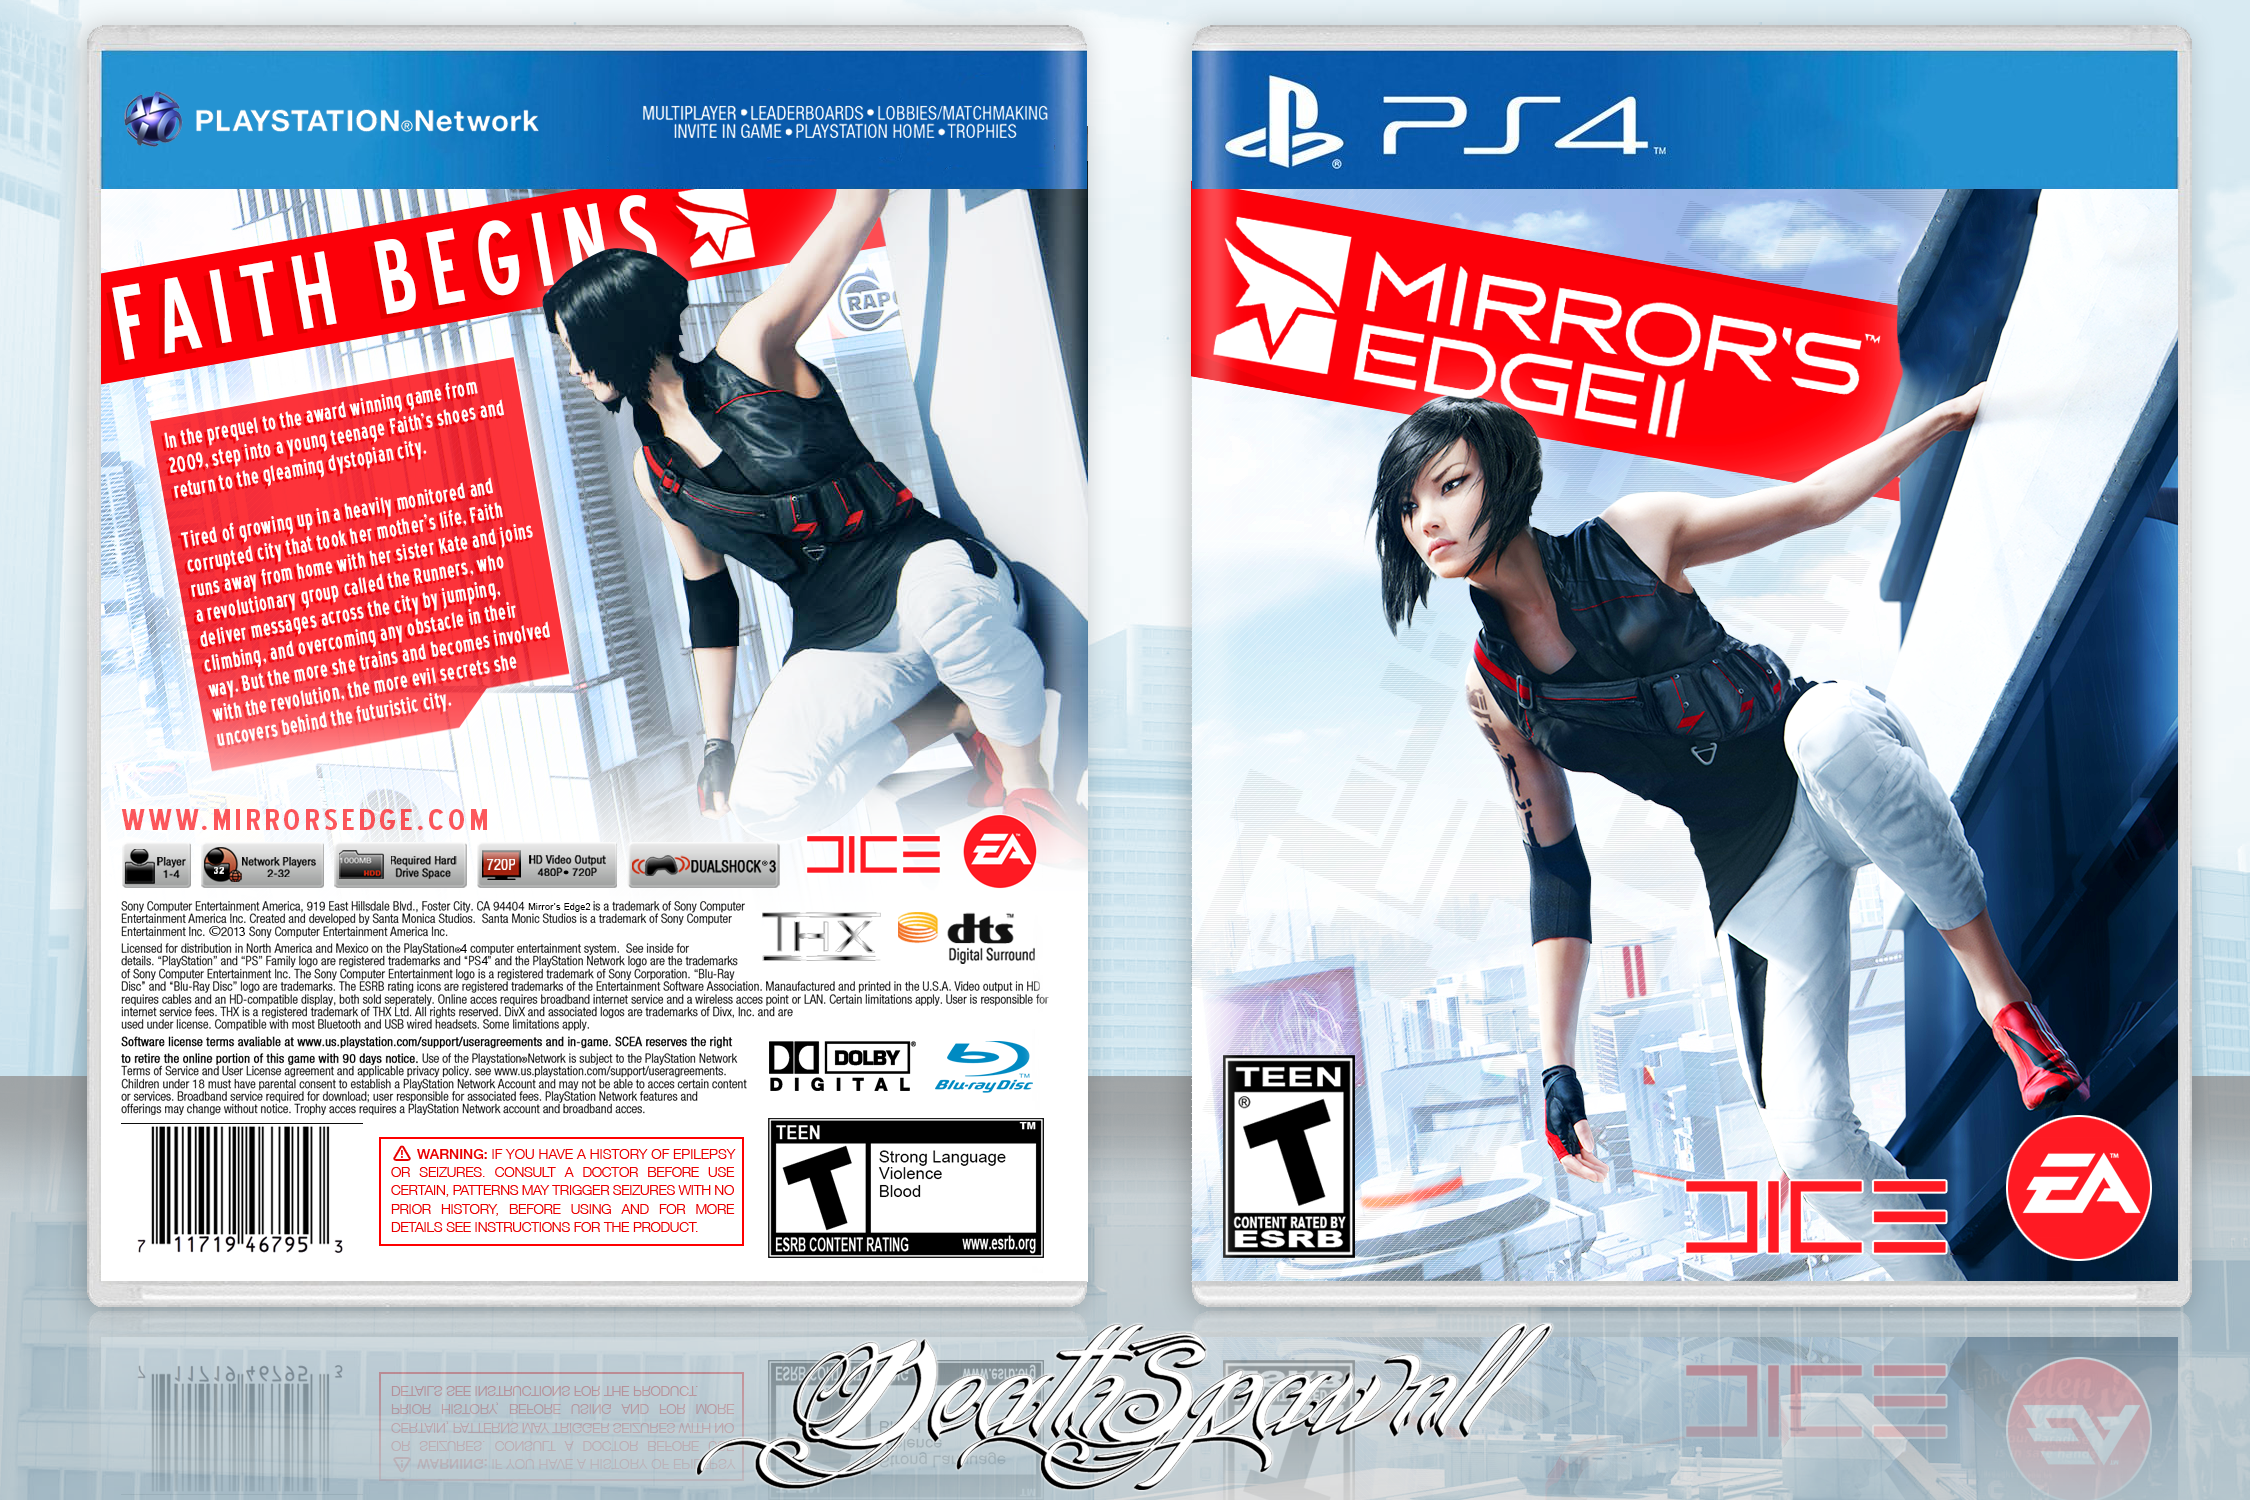 Mirror's Edge 2 box cover